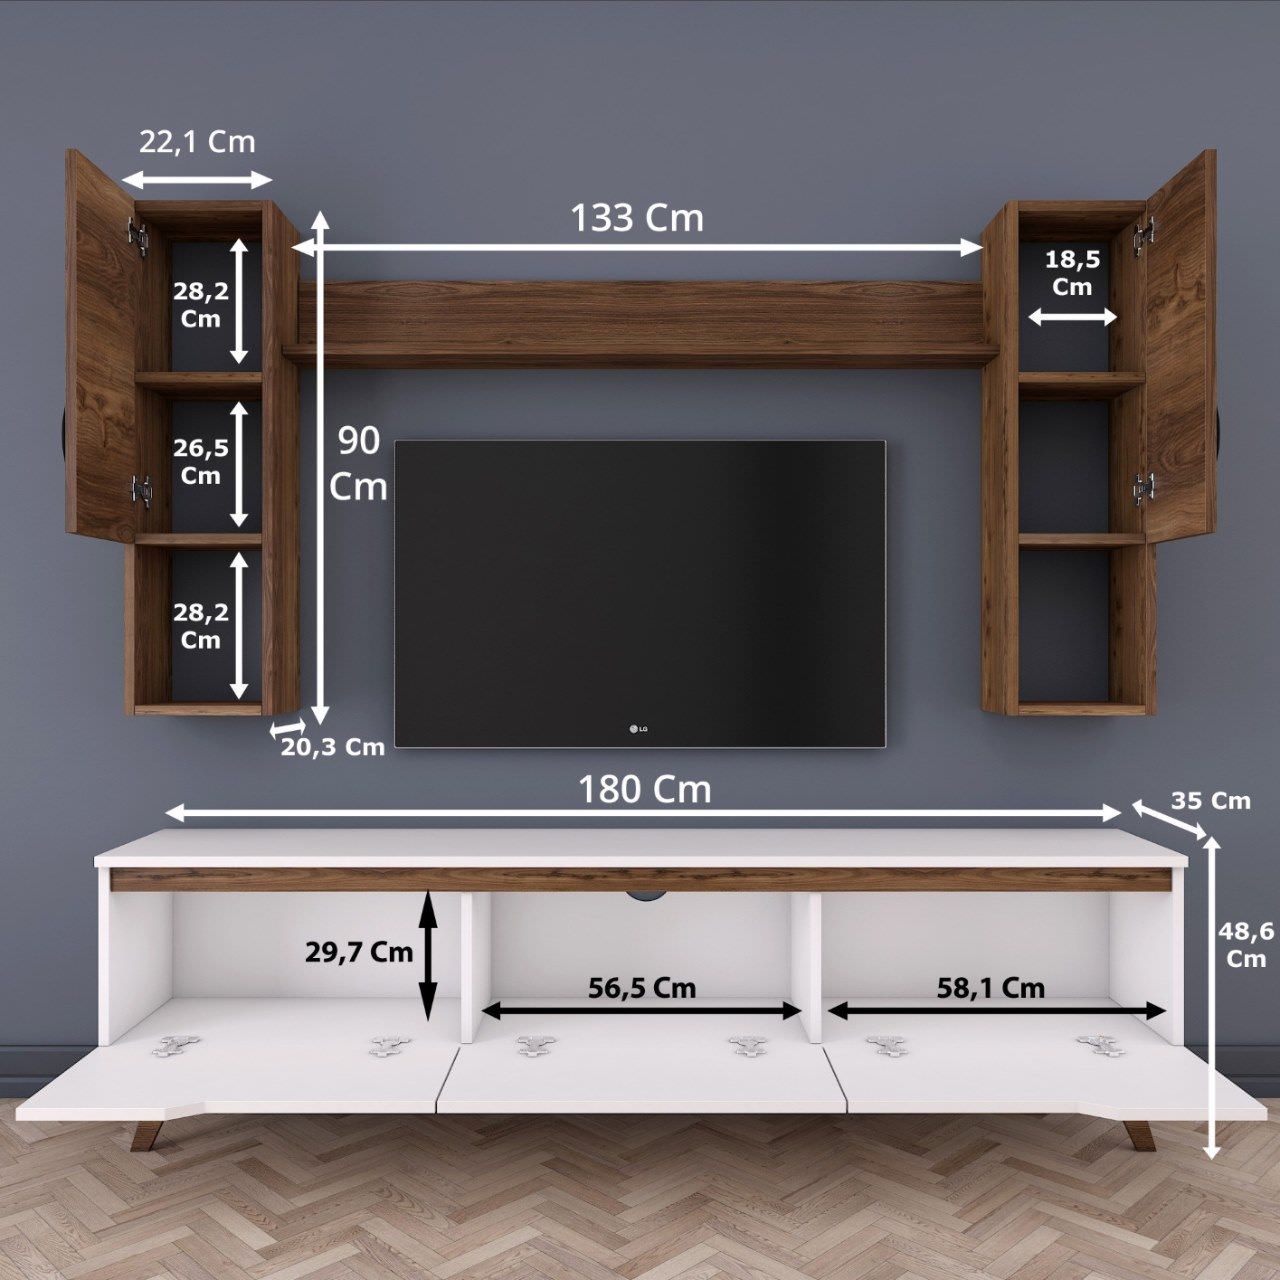 Kích thước kệ tivi thông minh phù hợp với không gian nội thất vừa và nhỏ với nhiều ngăn tủ đựng đồ